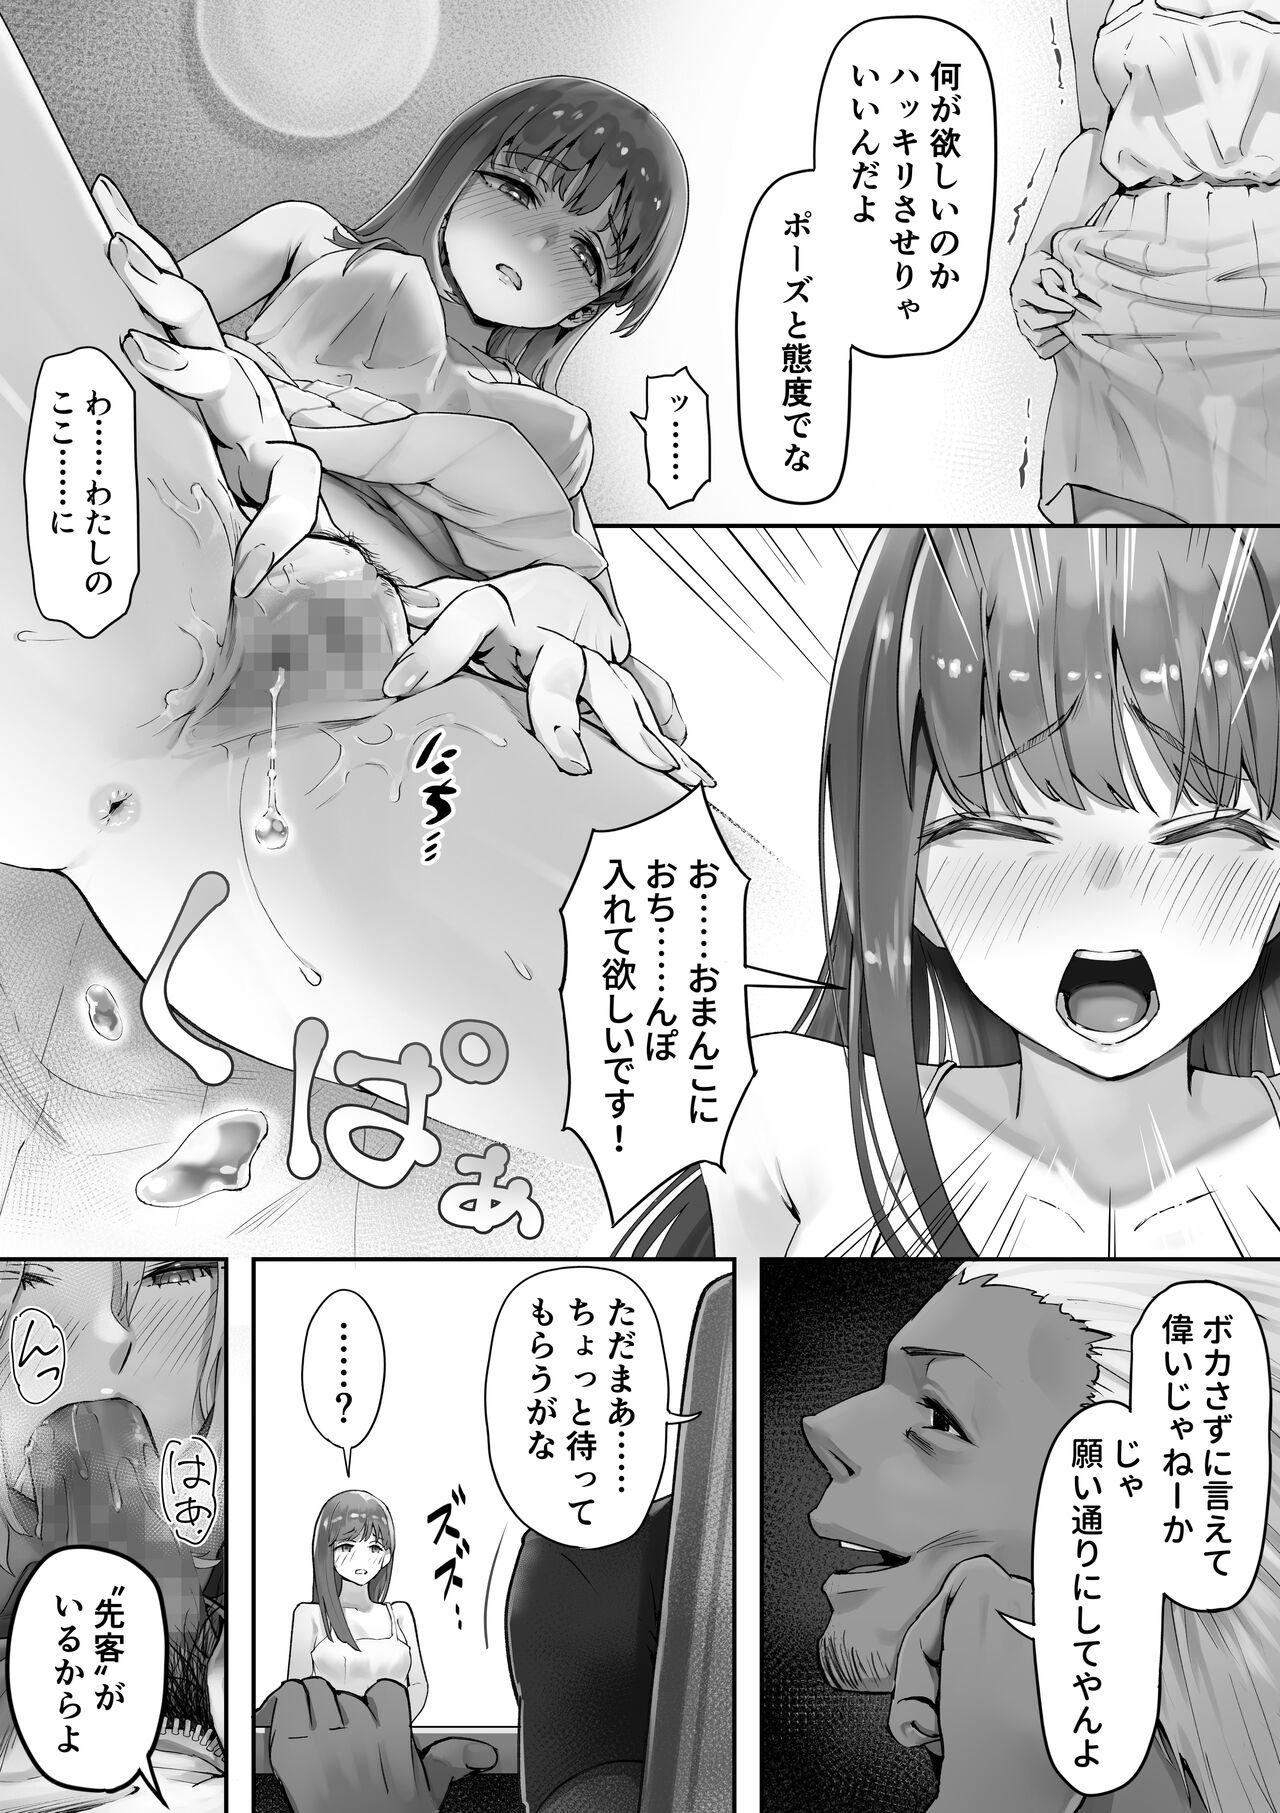 Roludo Ore ga Saki ni Suki datta kara yoo 3 - Original Bukkake - Page 4